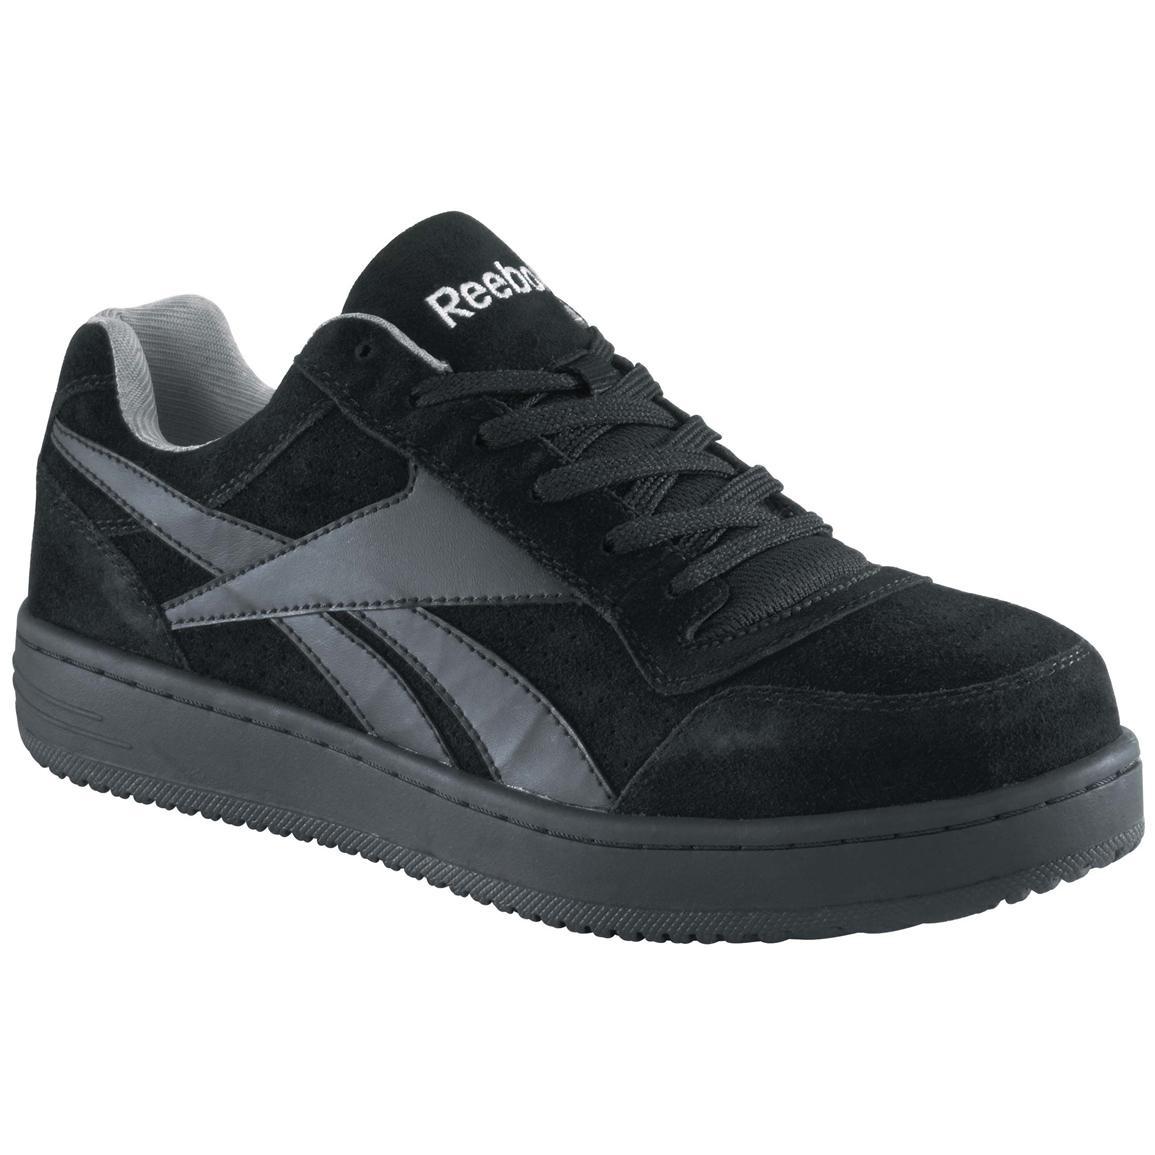 Women's Reebok® Steel Toe Classic Shoes, Black